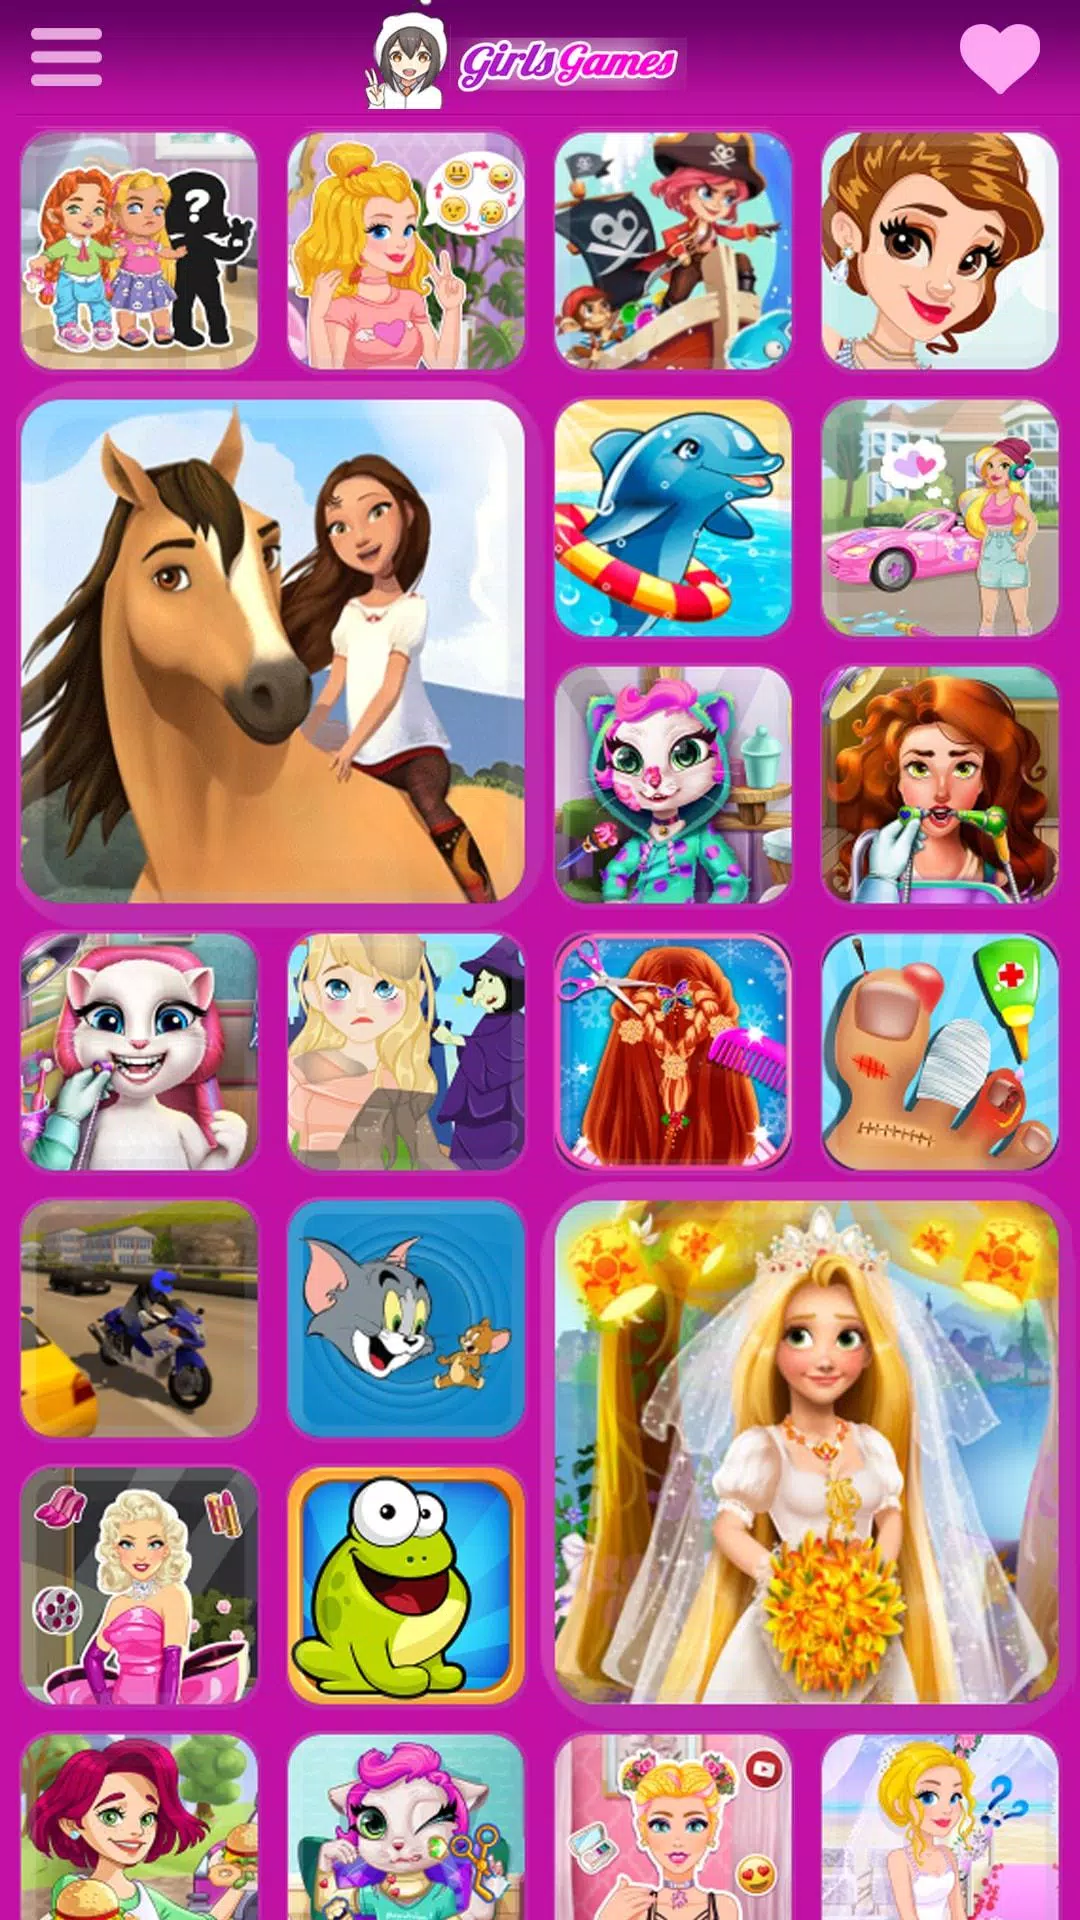 Descarga de APK de Juegos De Niñas Gratis para Android, gratis juegos  gratis de niñas 